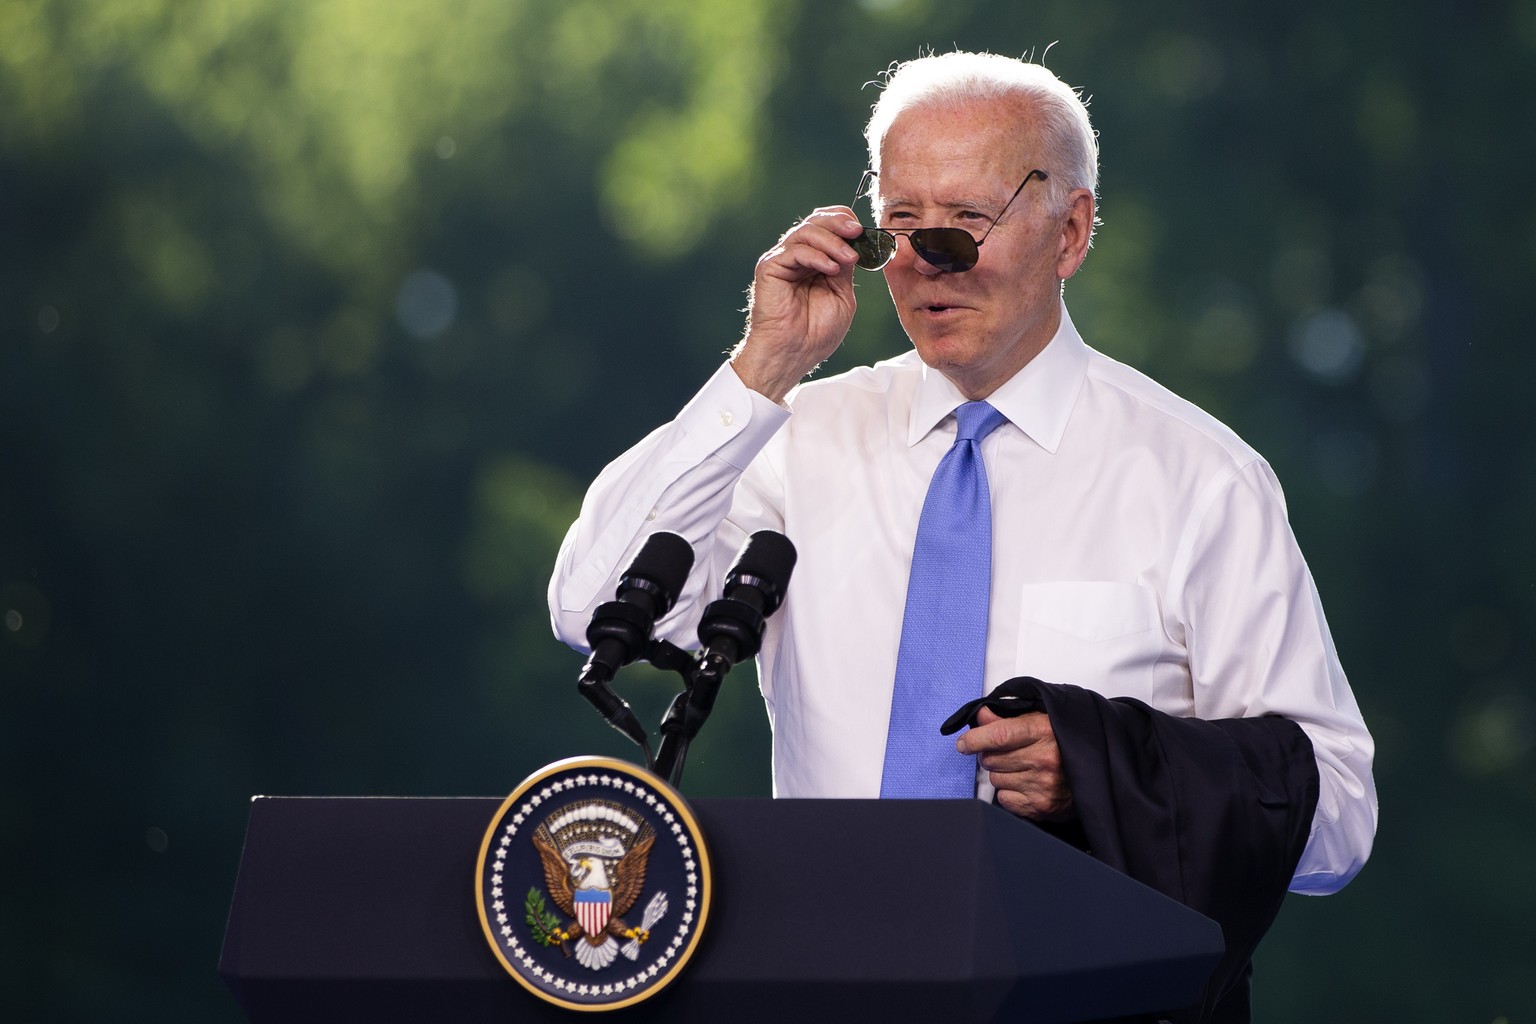 Ziemlich heiss hier: Joe Biden entledigte sich während der Medienkonferenz seines Jackets.